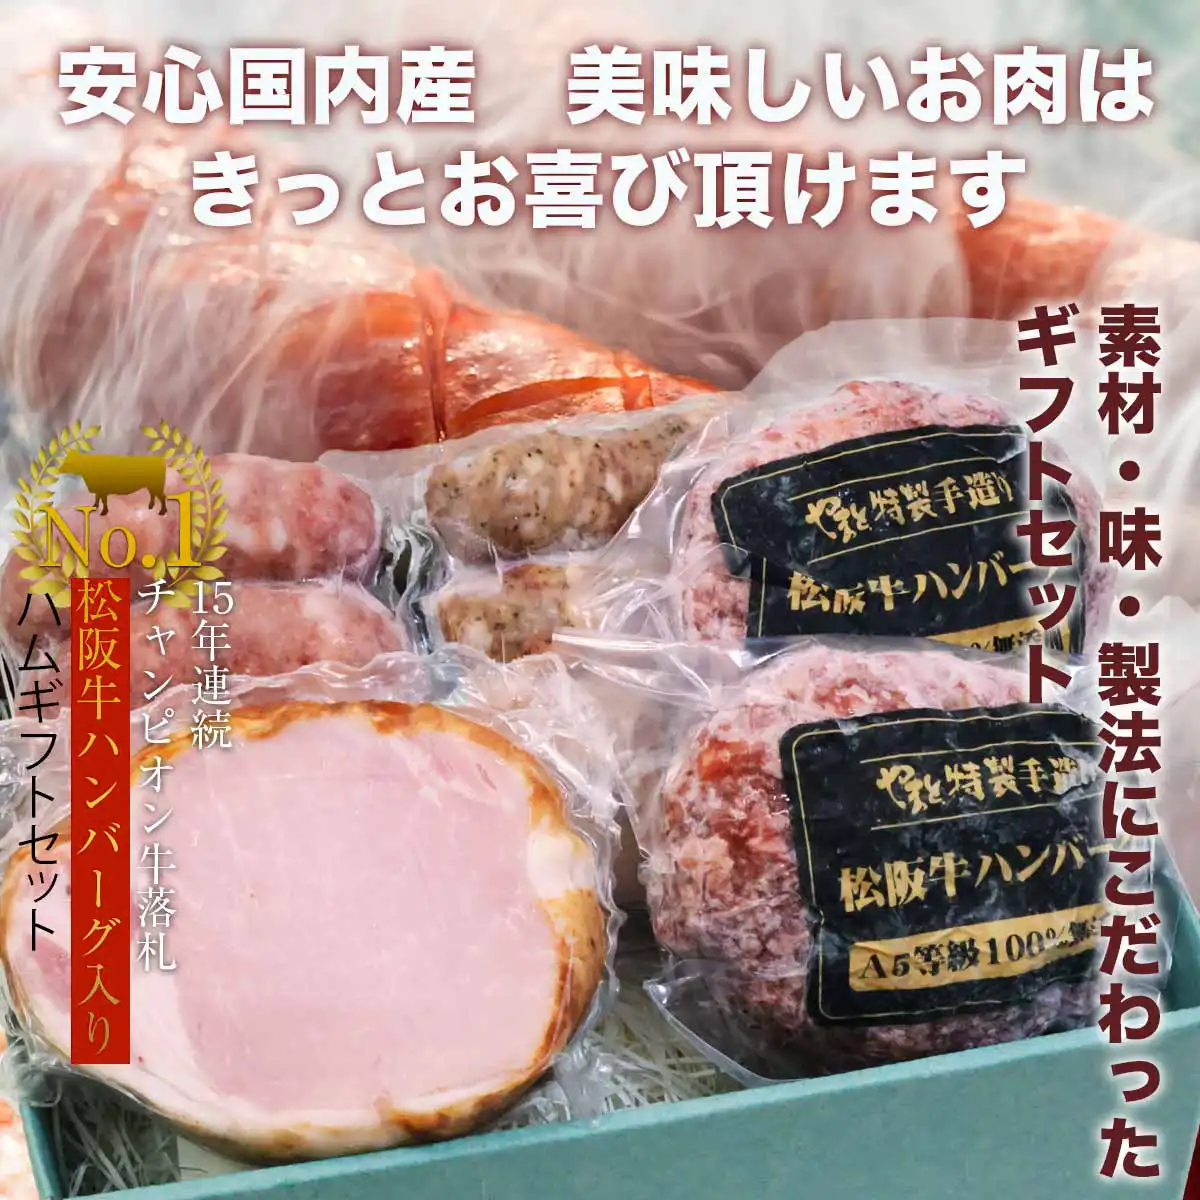 松阪牛ハンバーグ・ハムギフトセットA